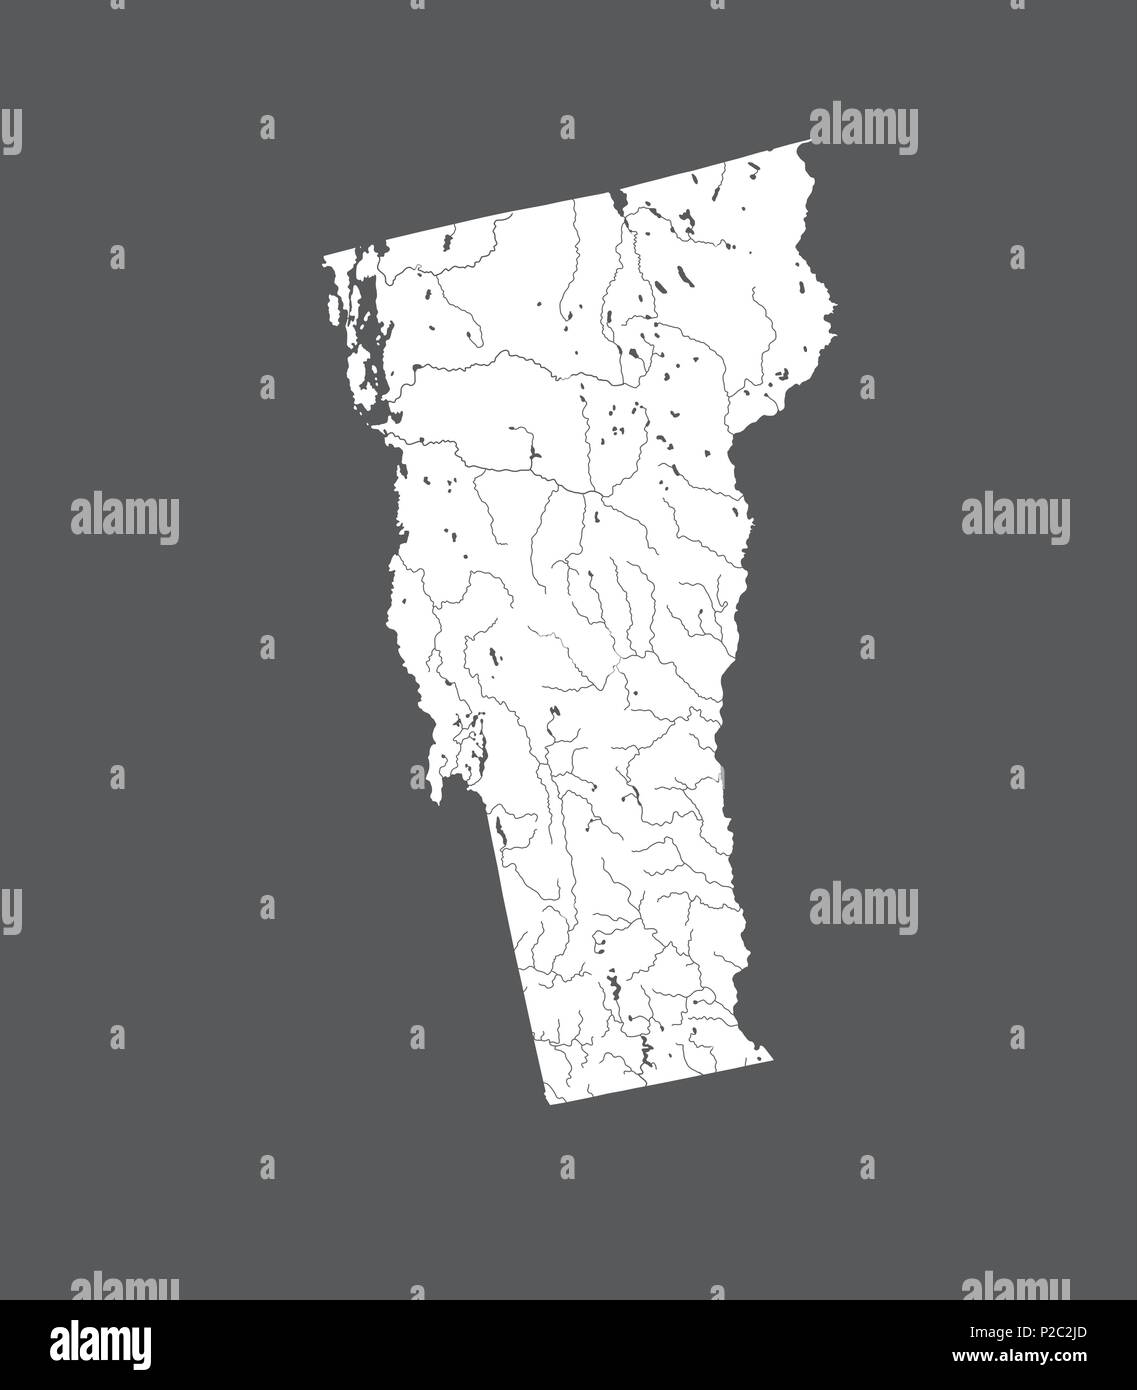 Der USA-Karte von Vermont. Hand gemacht. Flüsse und Seen sind dargestellt. Bitte sehen Sie sich meine anderen Bilder von kartographischen Serie - sie sind alle sehr Detaile Stock Vektor